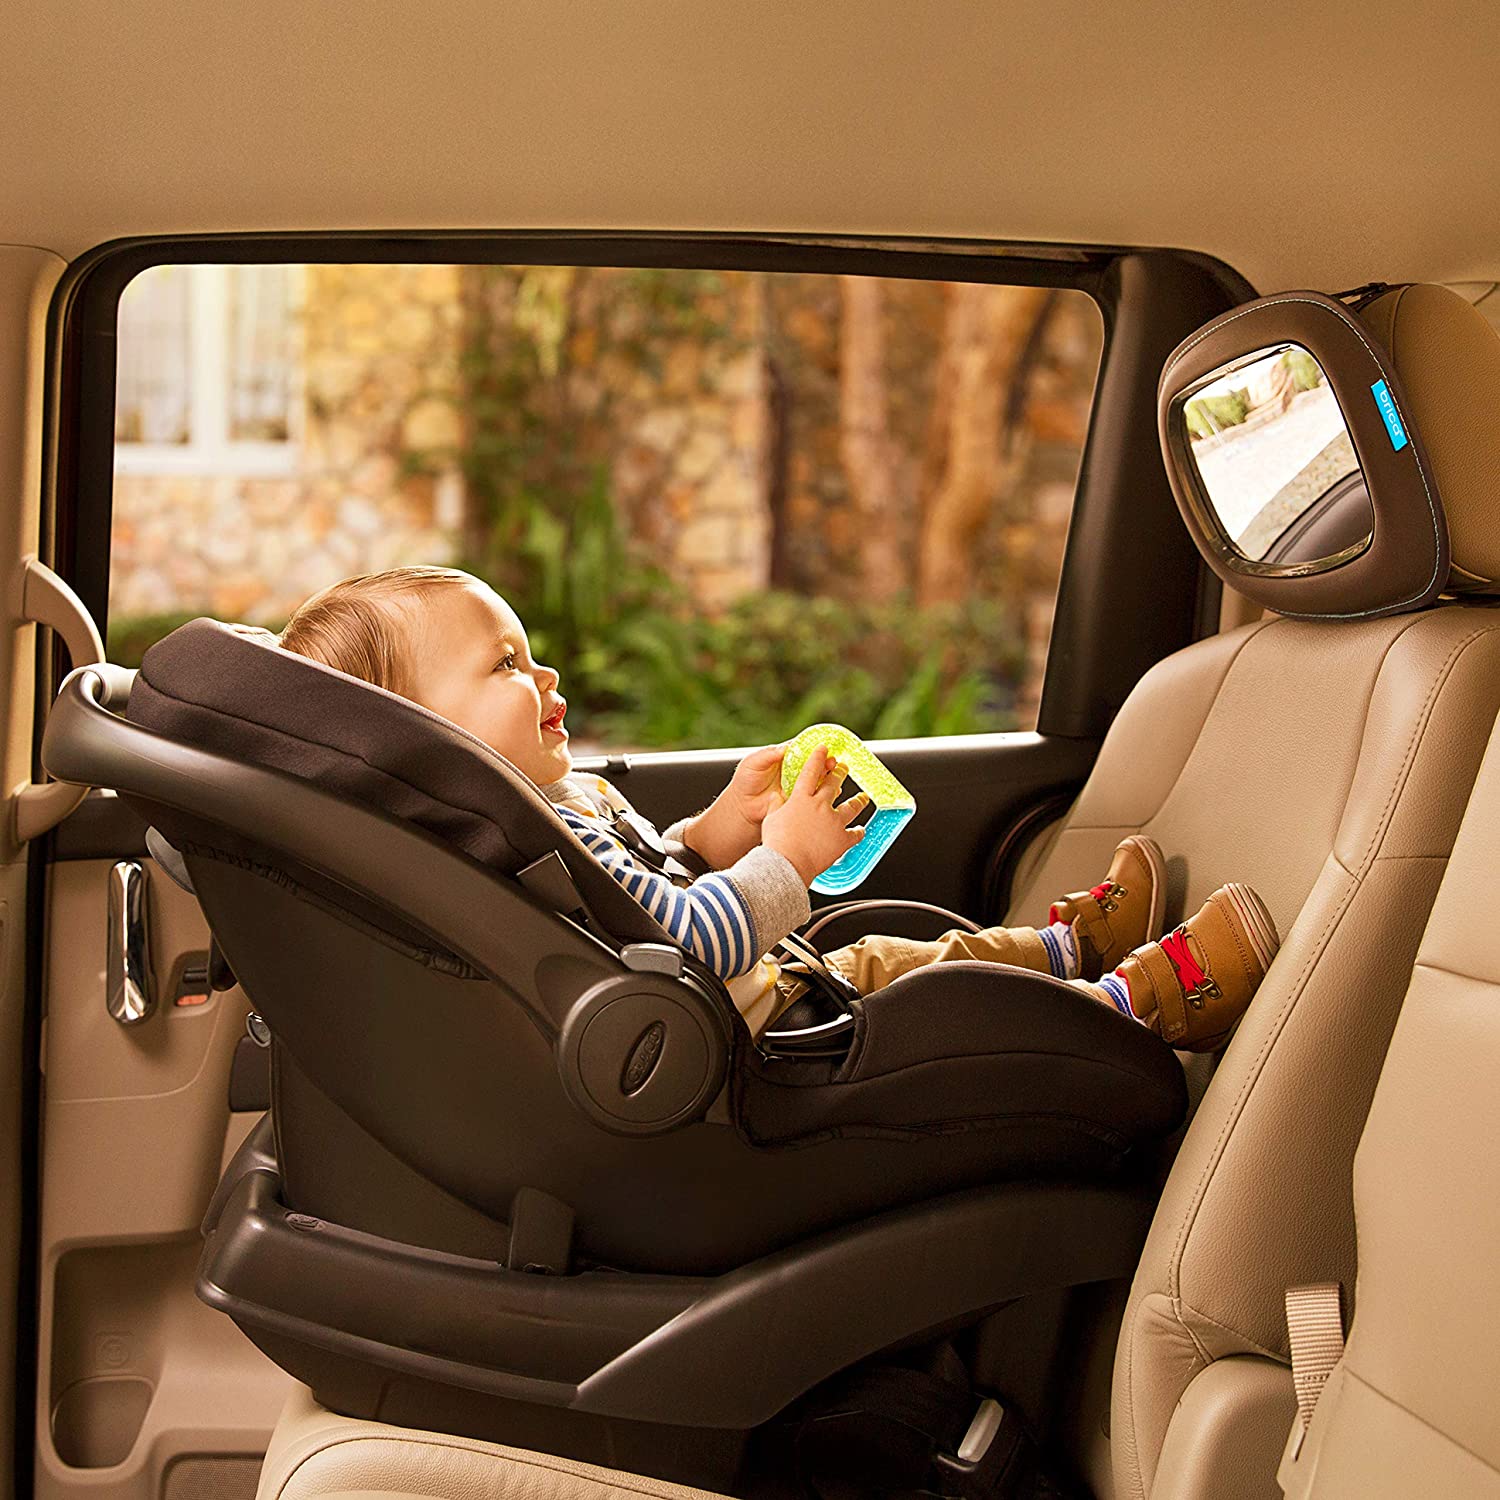 Bebê viajando com segurança em um bebê conforto